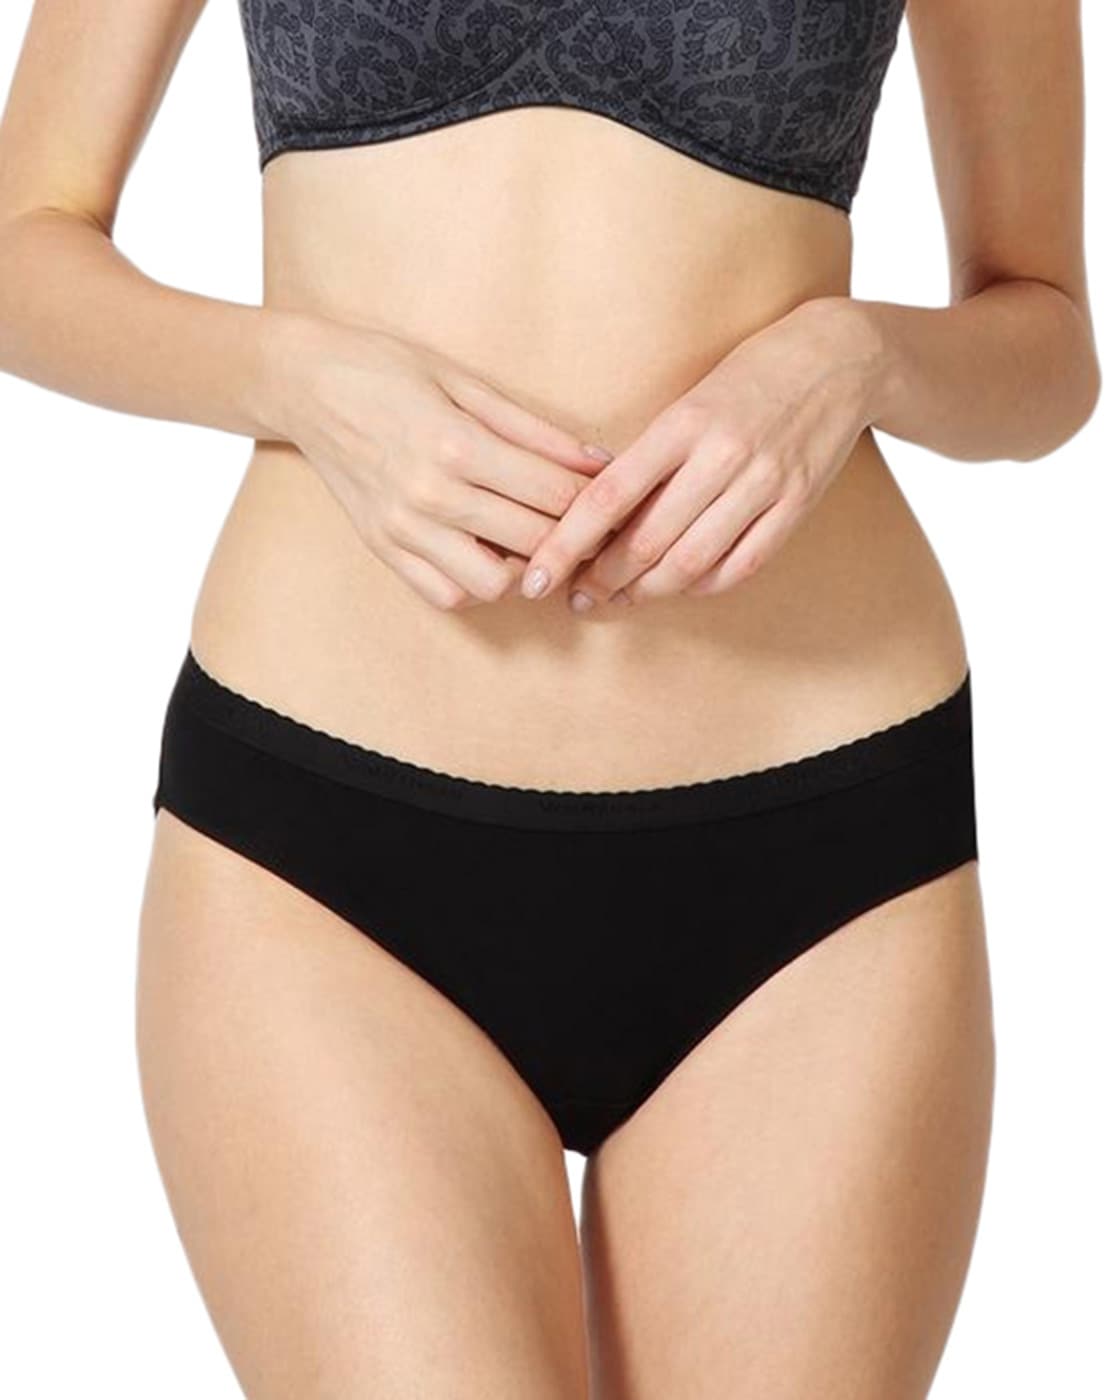 Buy Assorted Panties for Women by VAN 